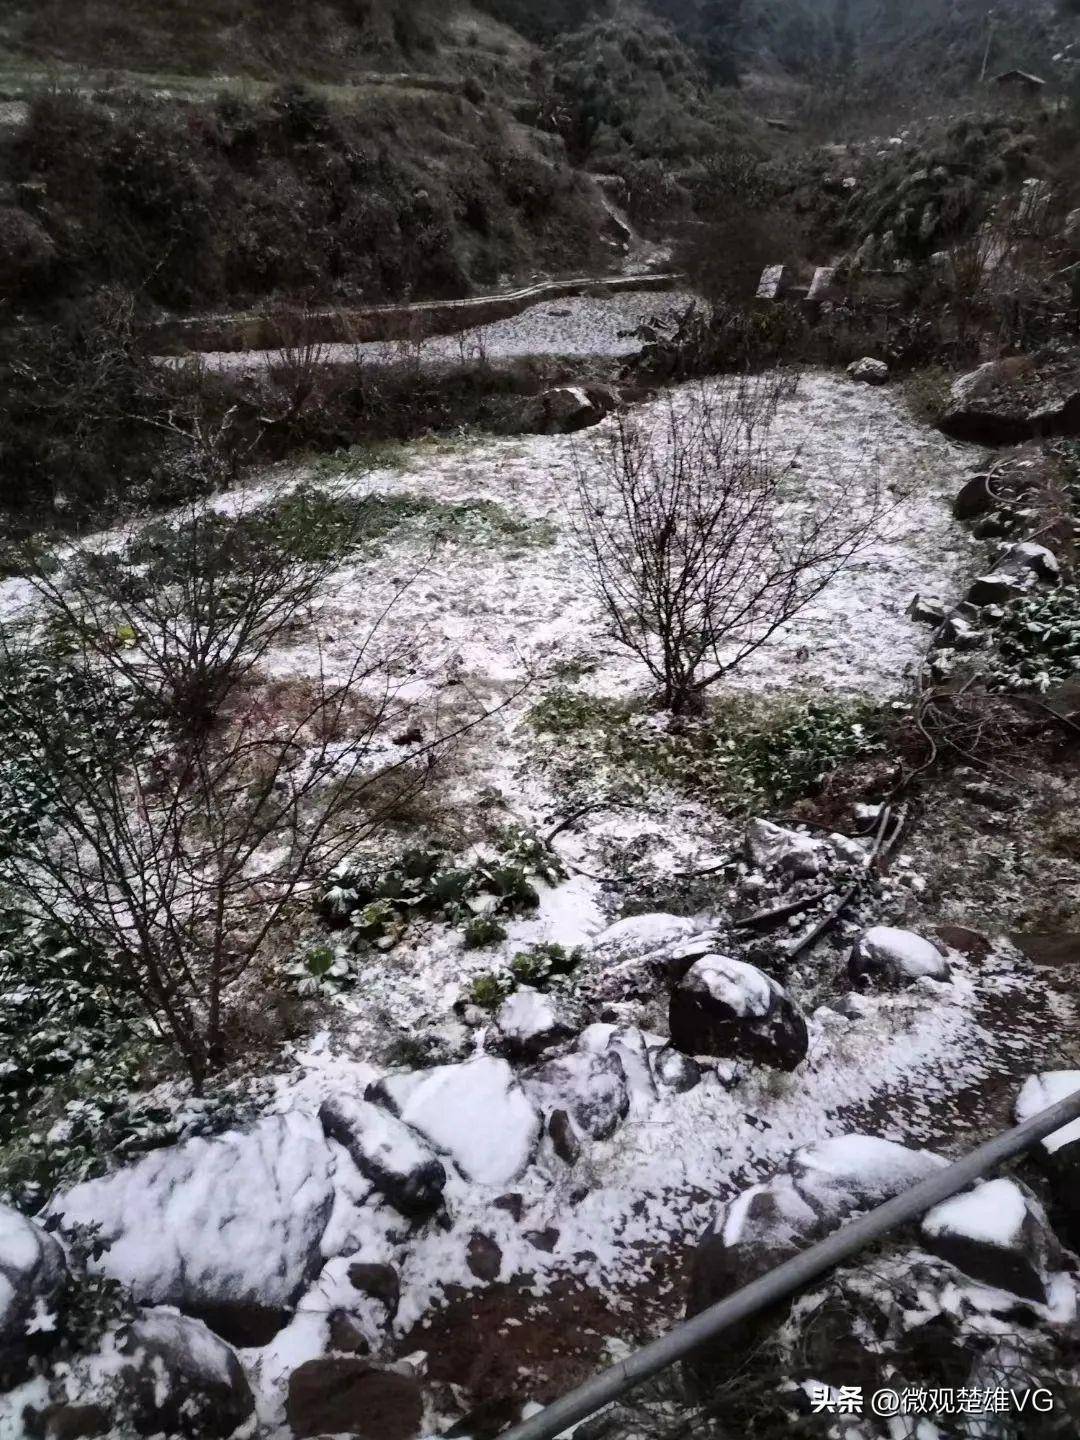 下雪啦！楚雄州多地迎来降雪